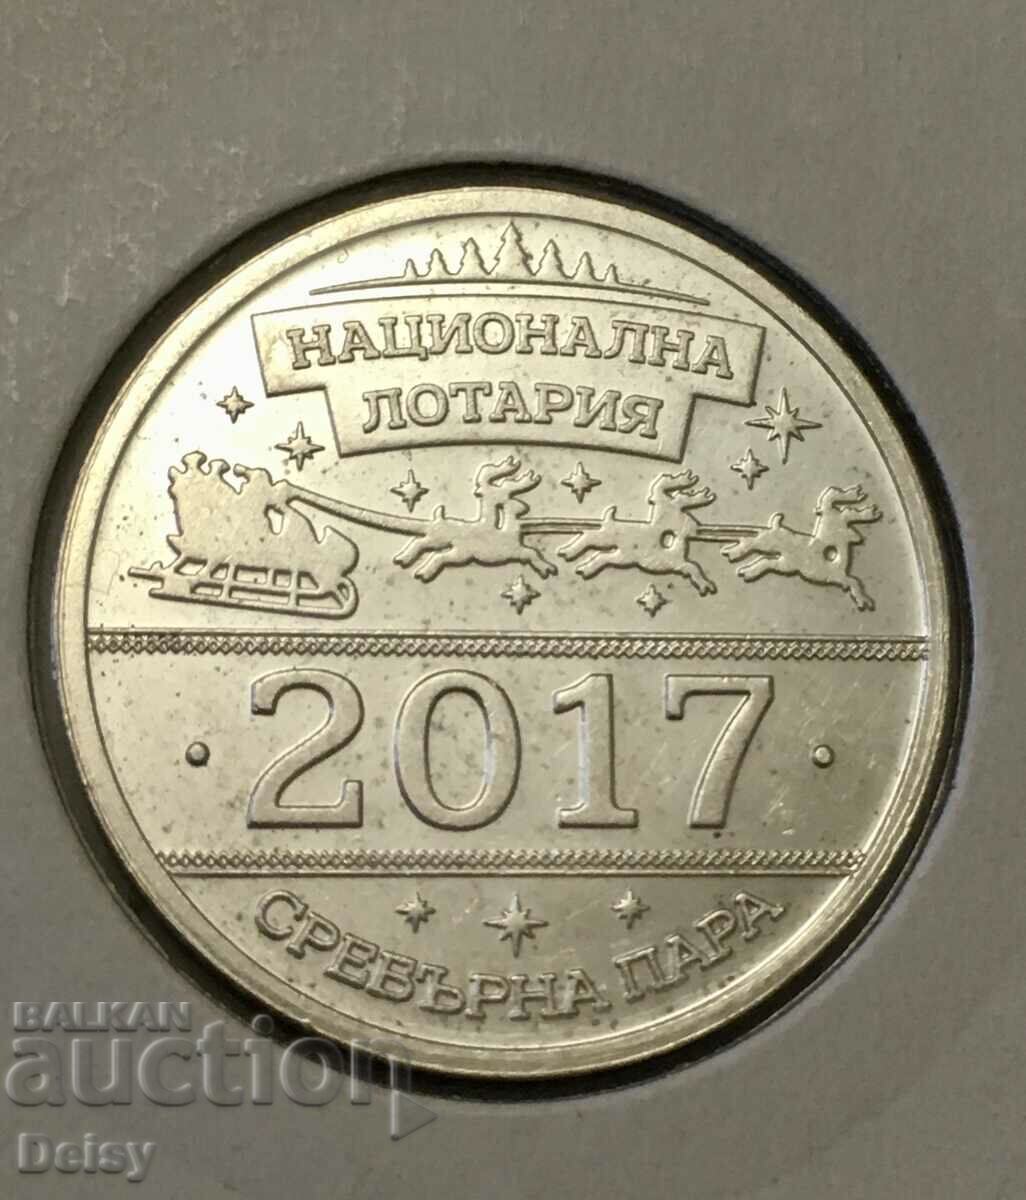 Български сребърен жетон!